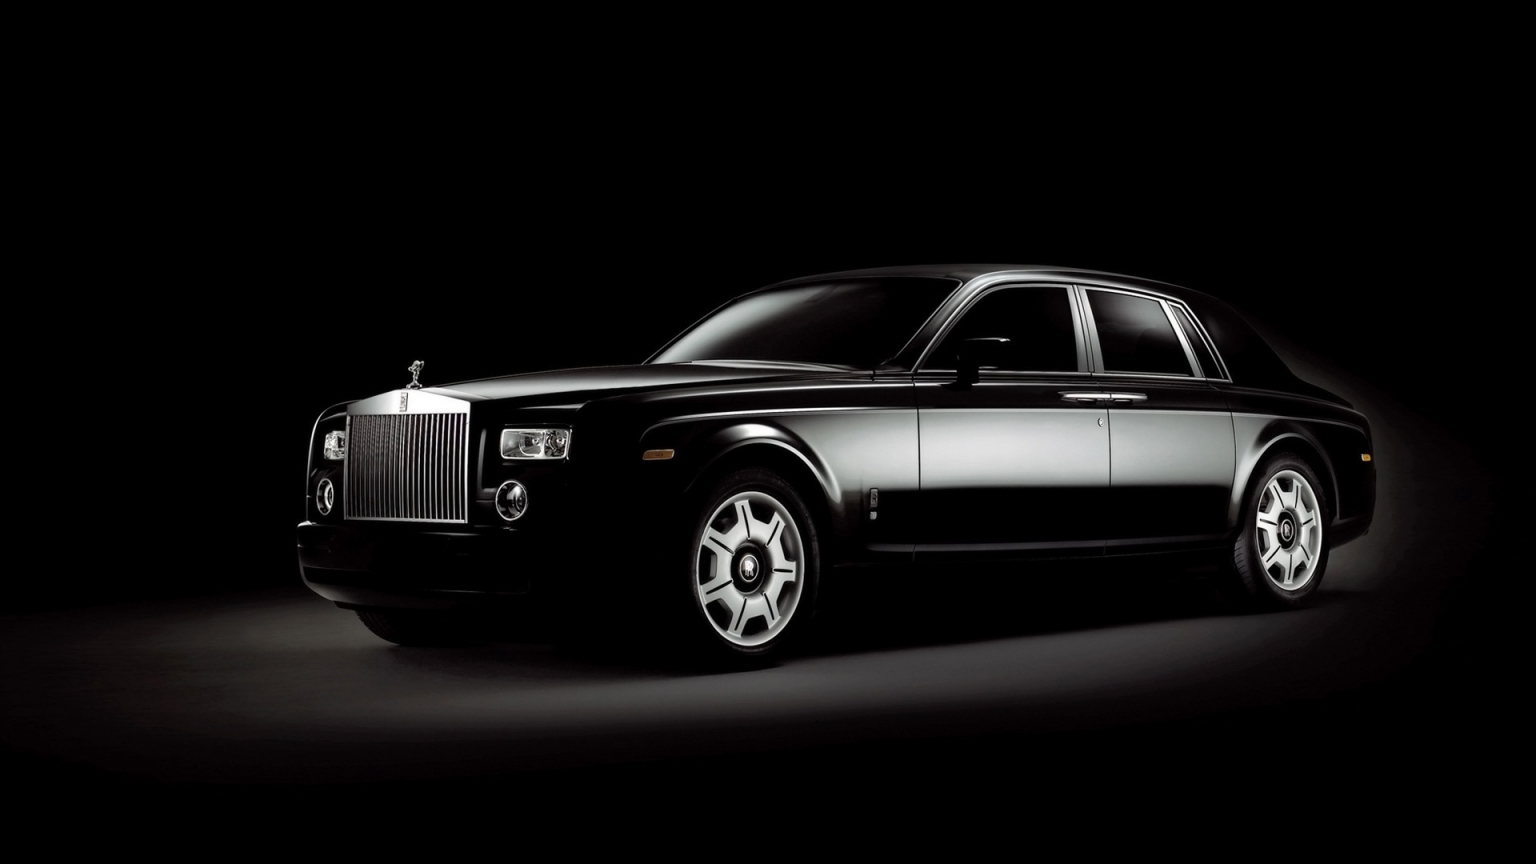 Rolls Royce Phantom Black for 1536 x 864 HDTV resolution